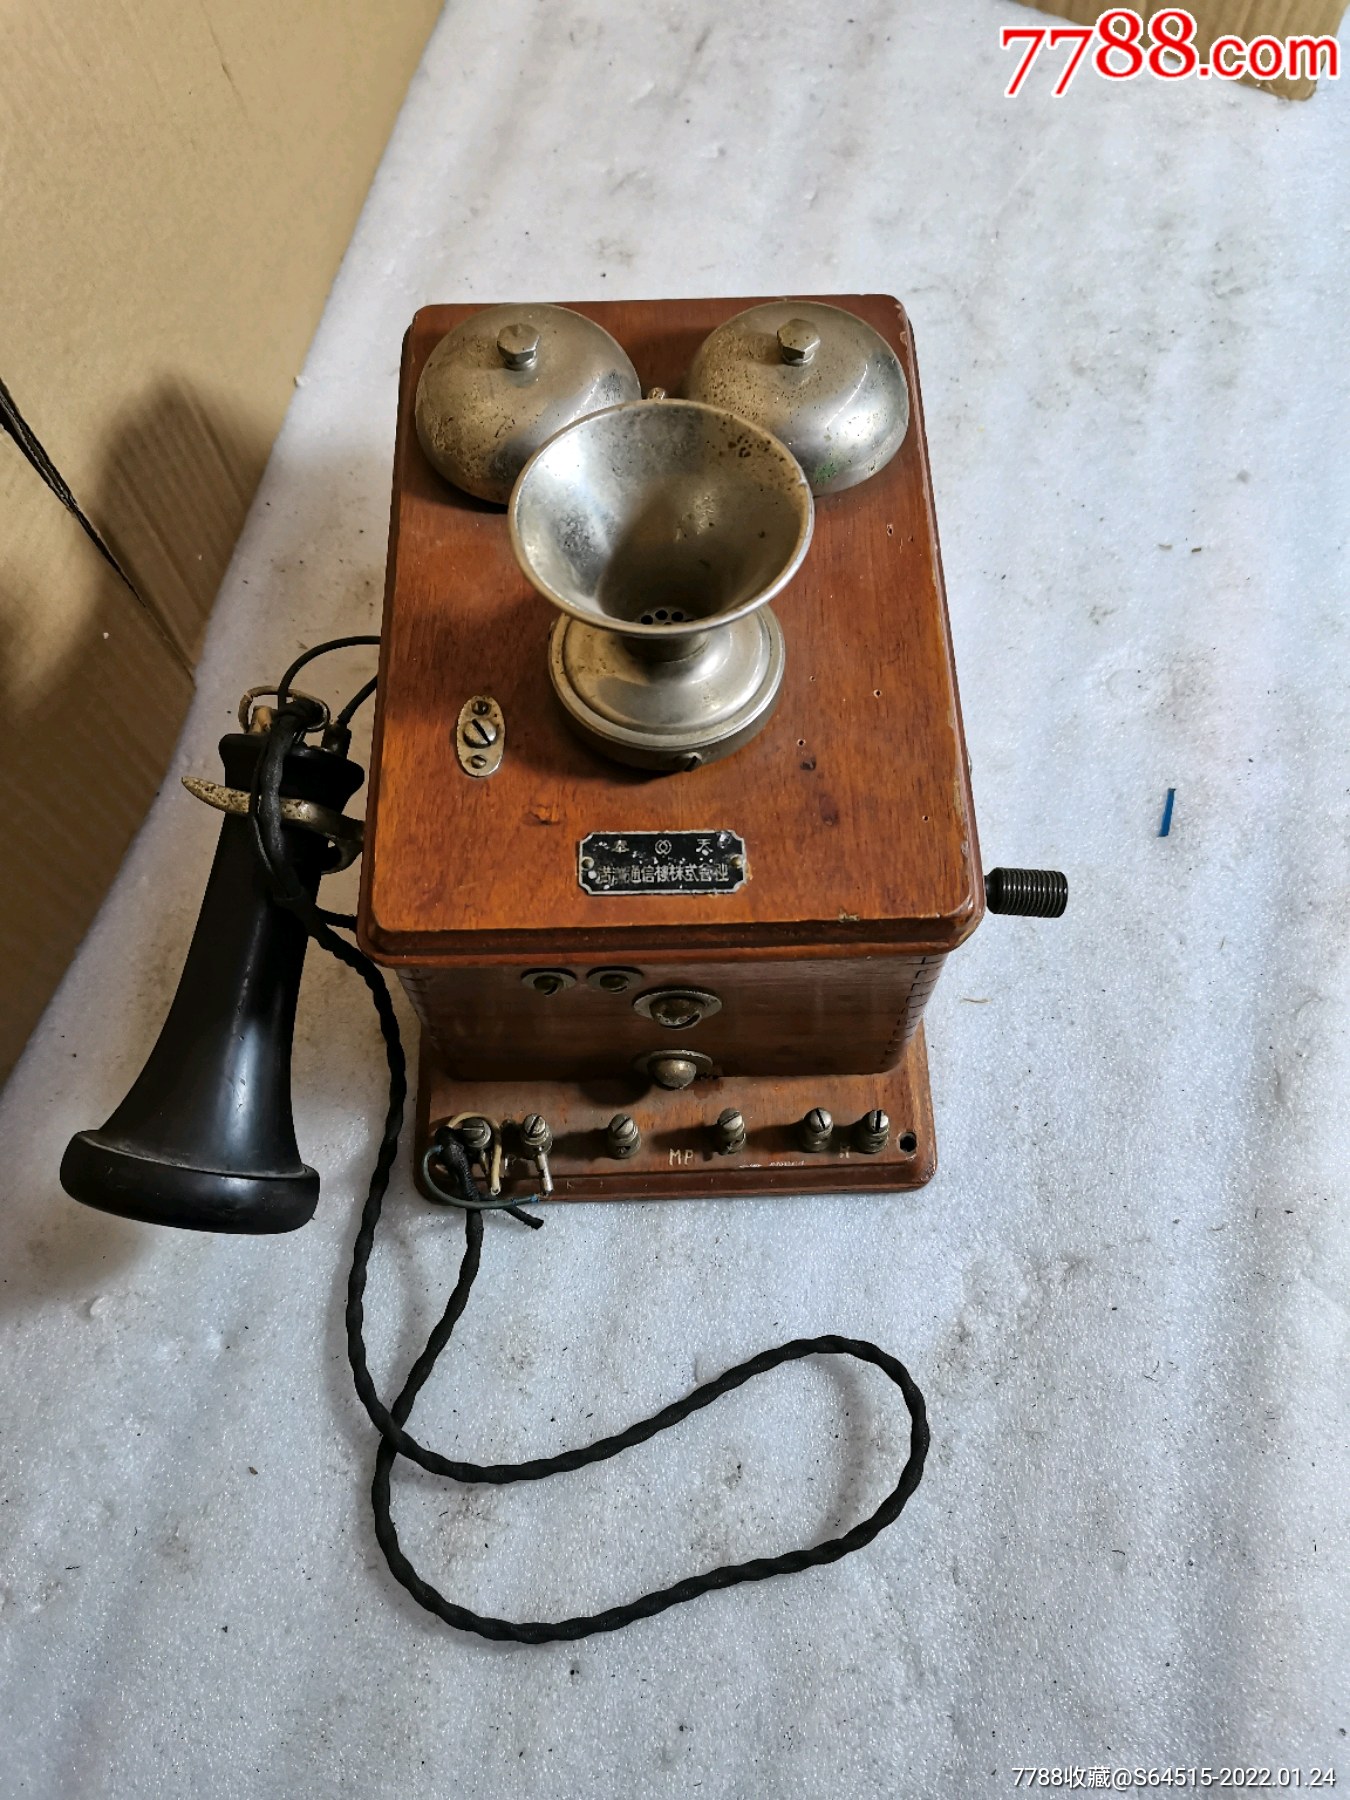 中国早期的电话机